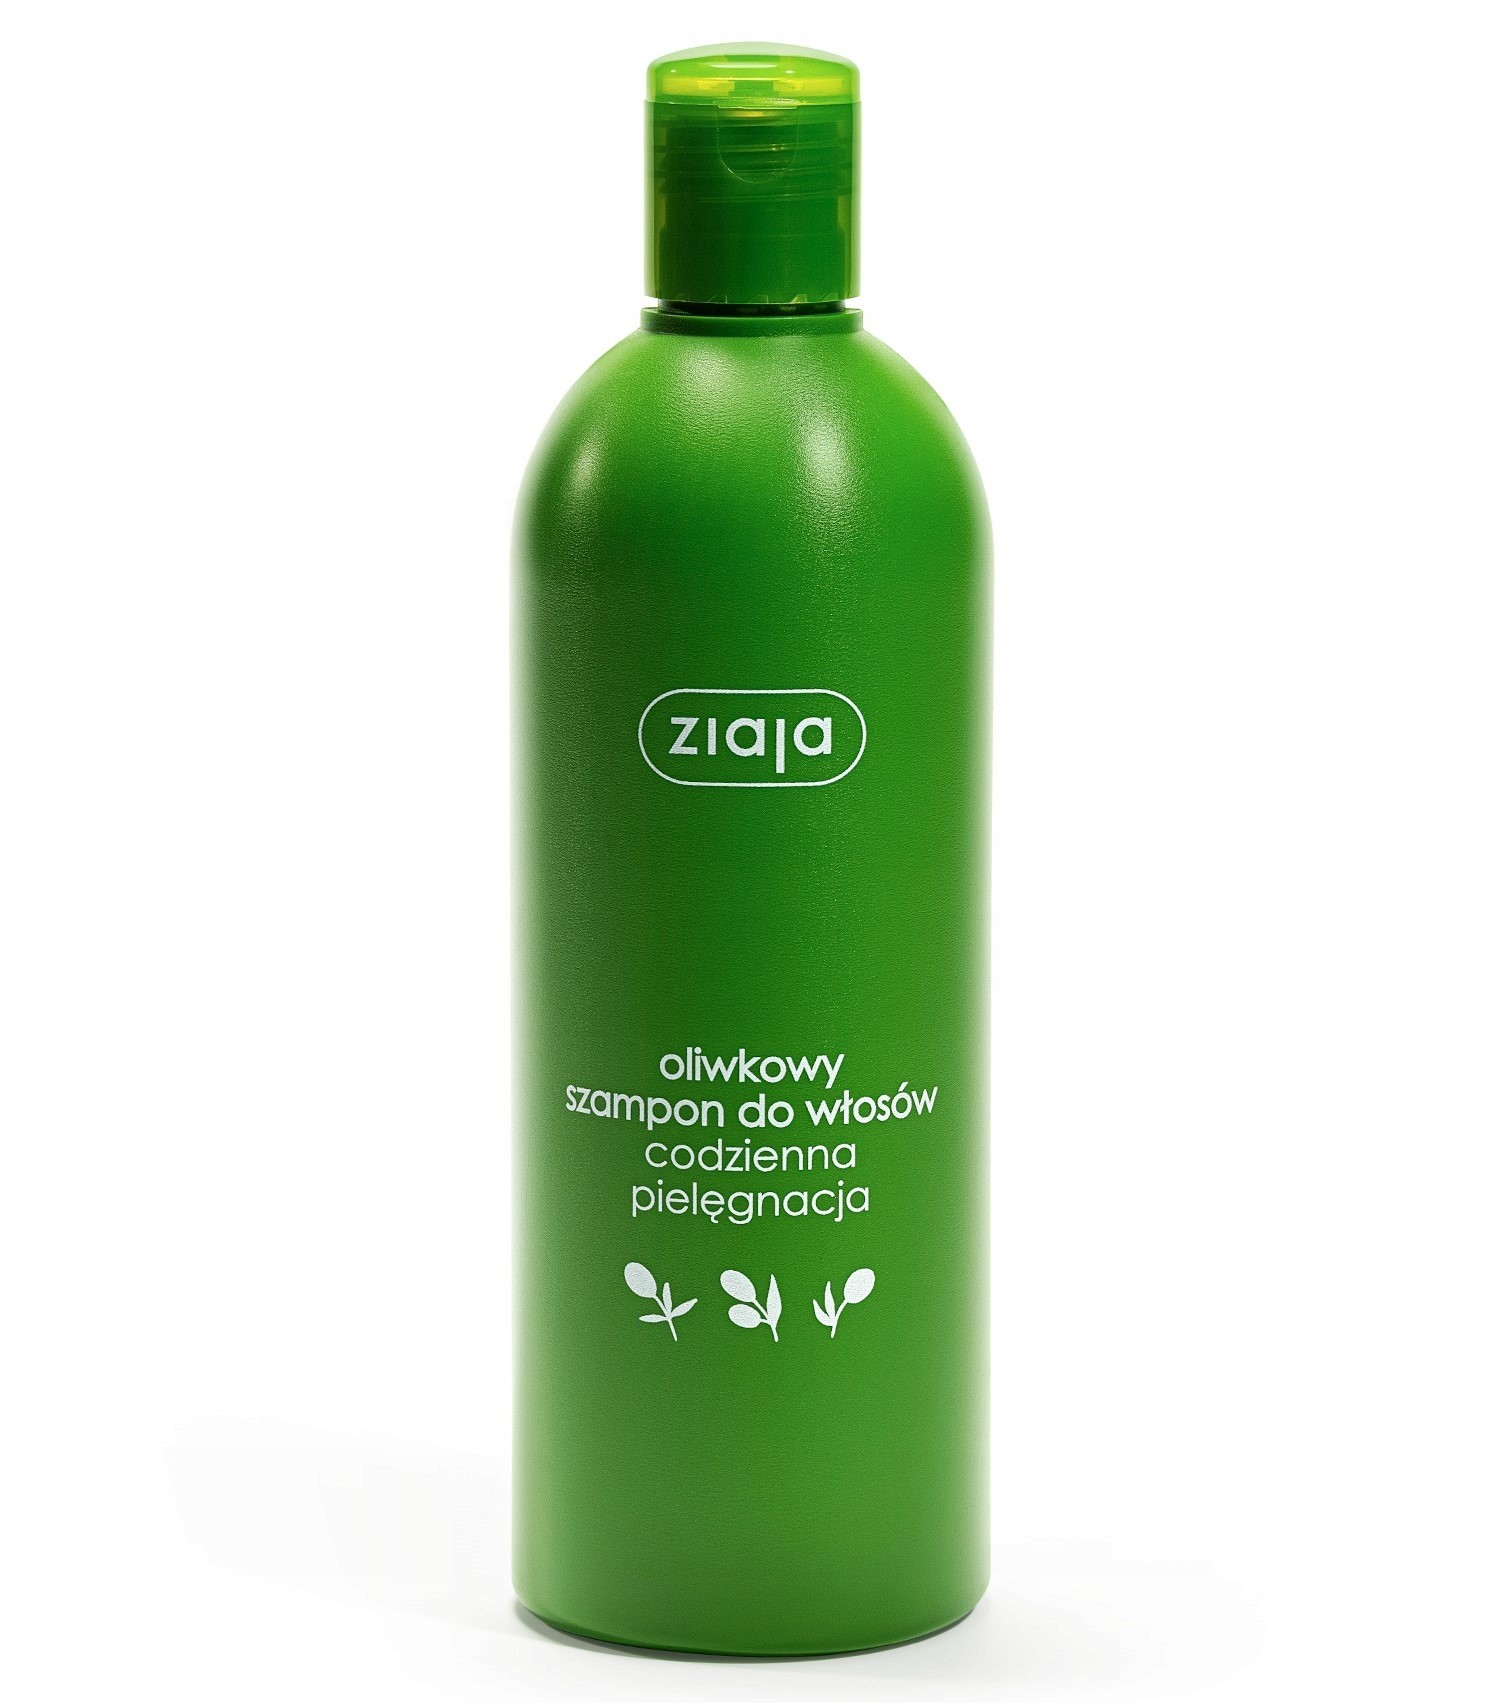 ziaja naturalny oliwkowy szampon do włosów 50ml